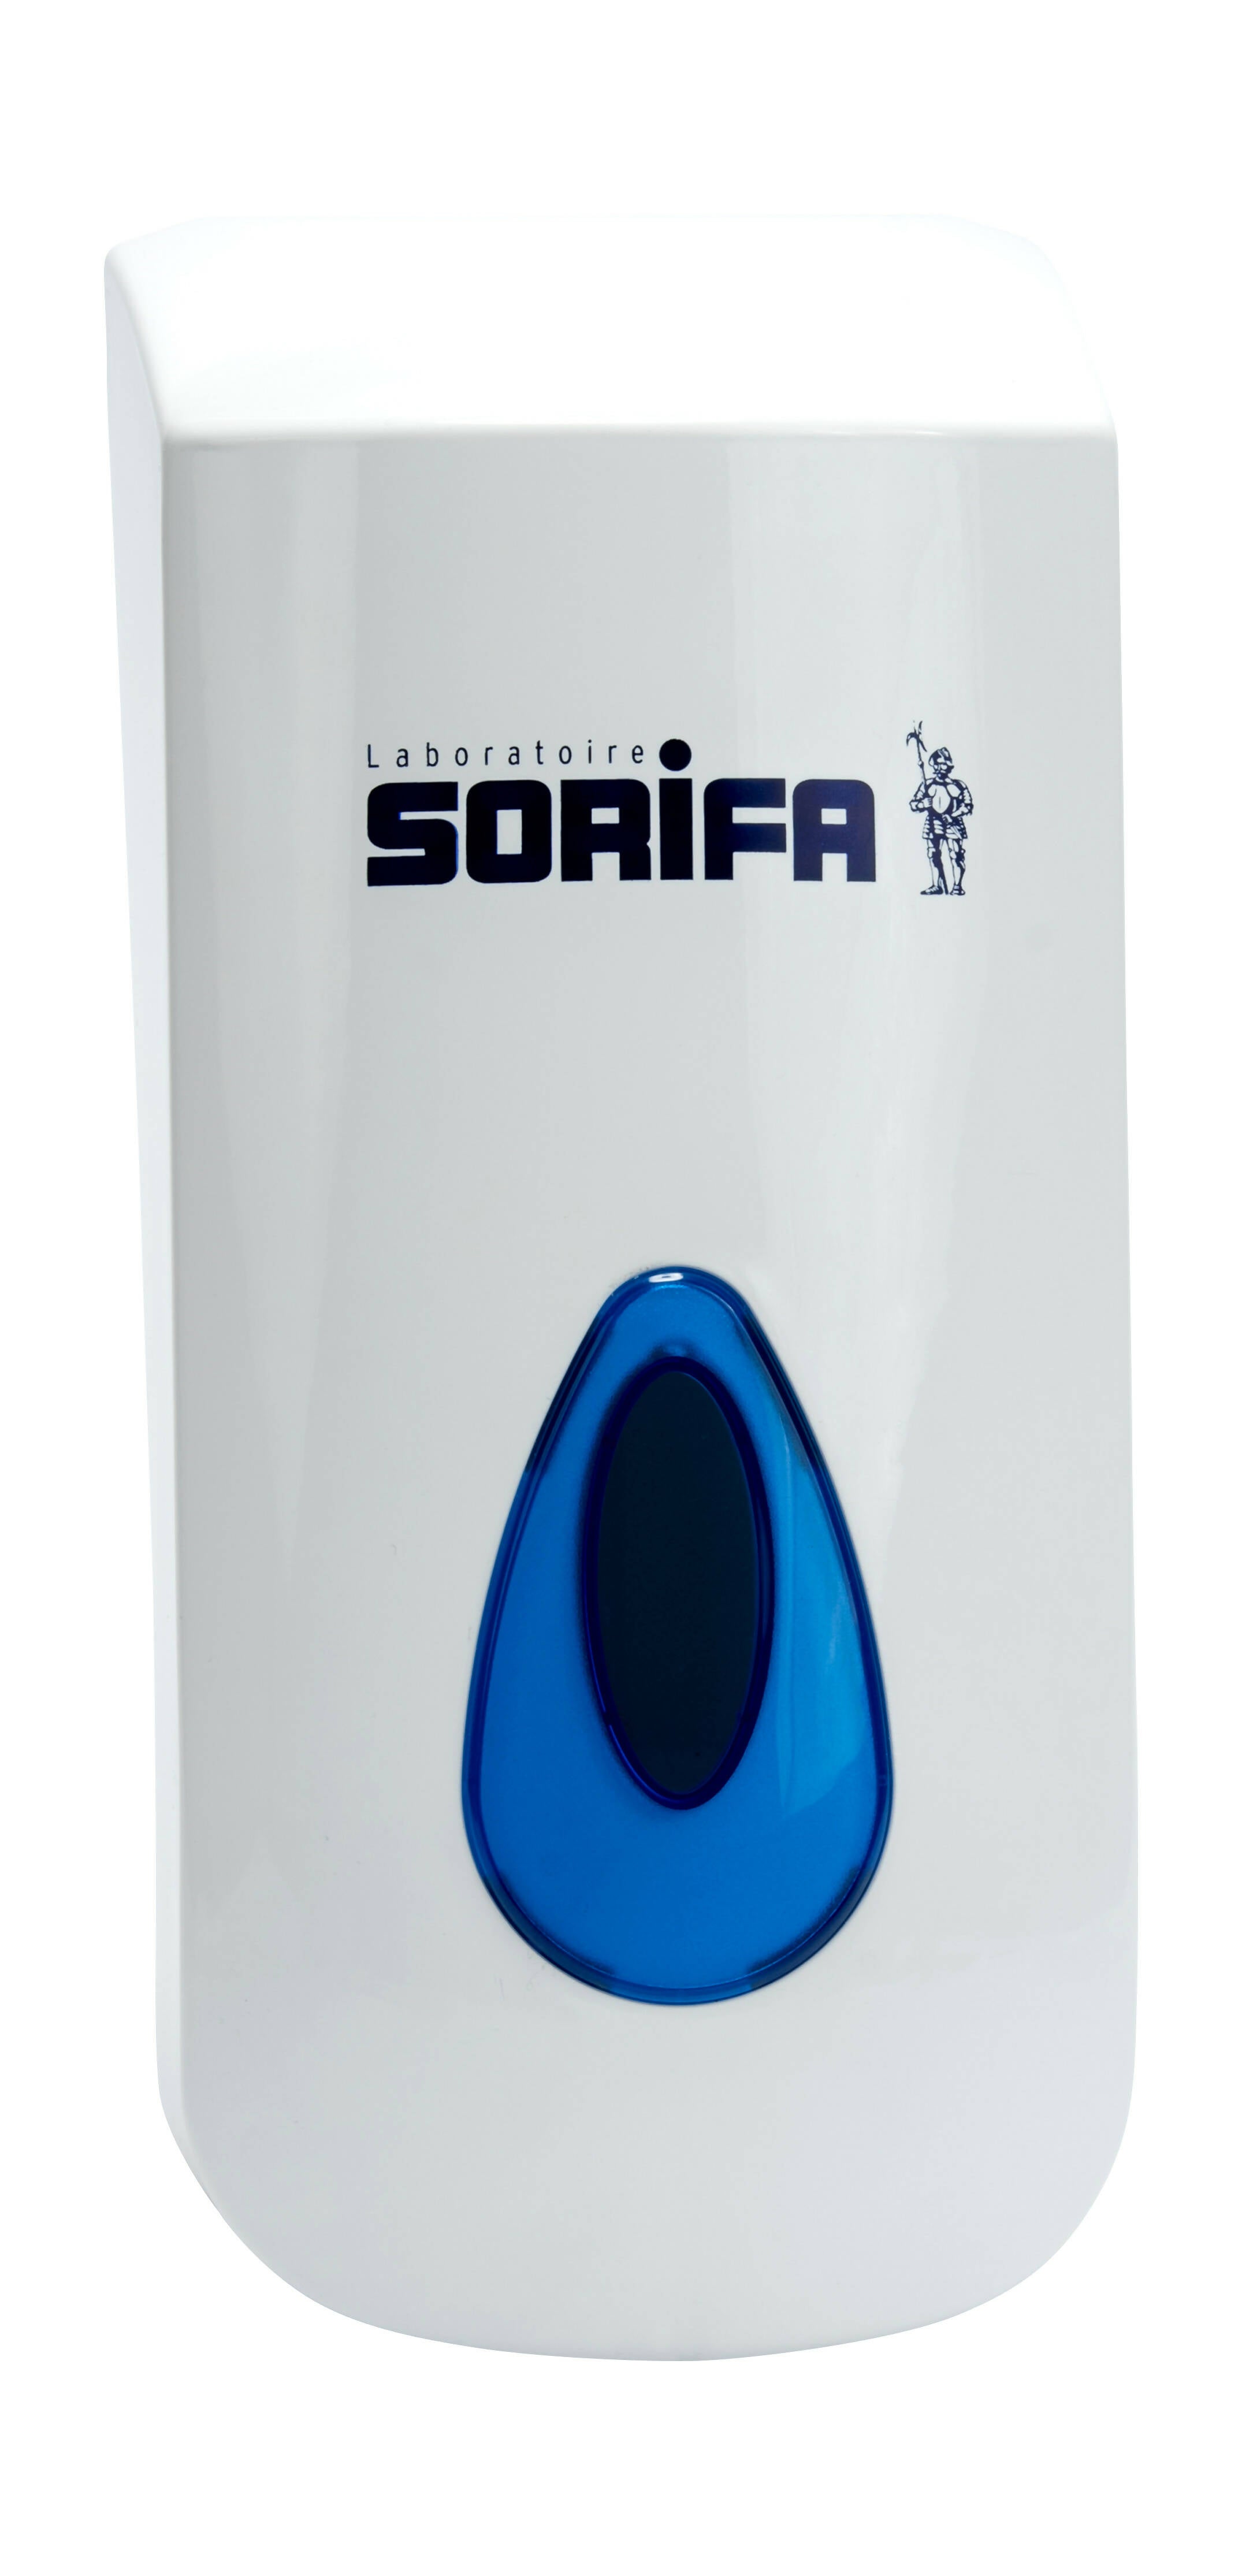 SORIFA - Distributeur mural métallique robuste, ergonomique, verrouillable pour flacon 1L de marque SORIFA - Pour gels et savons liquides.